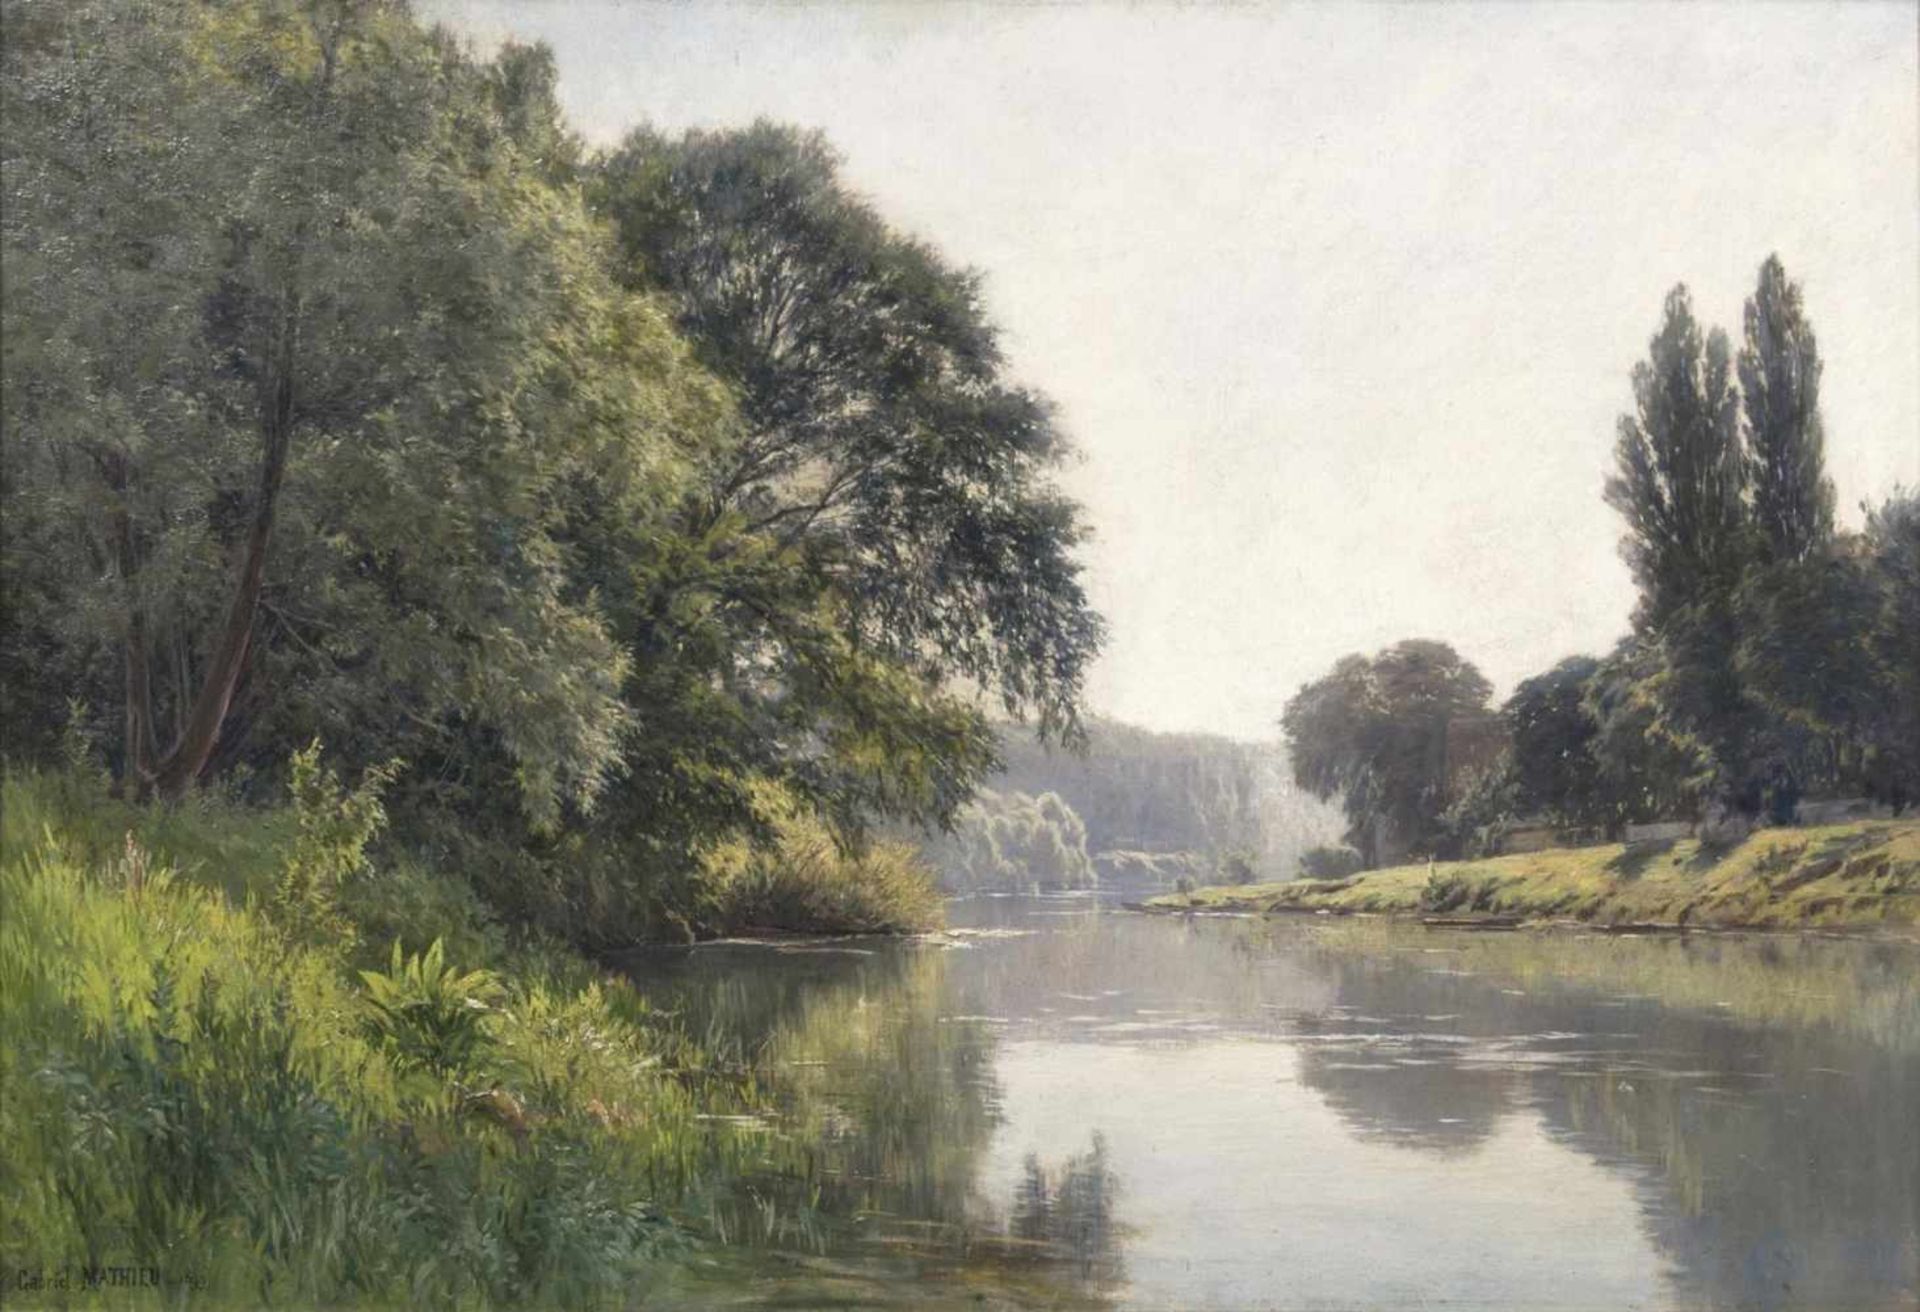 Gabriel Mathieu(Paris 1843 - 1921)An der MarneÖl/Lw., 65 x 92 cm, l. u. sign. und dat. Gabriel